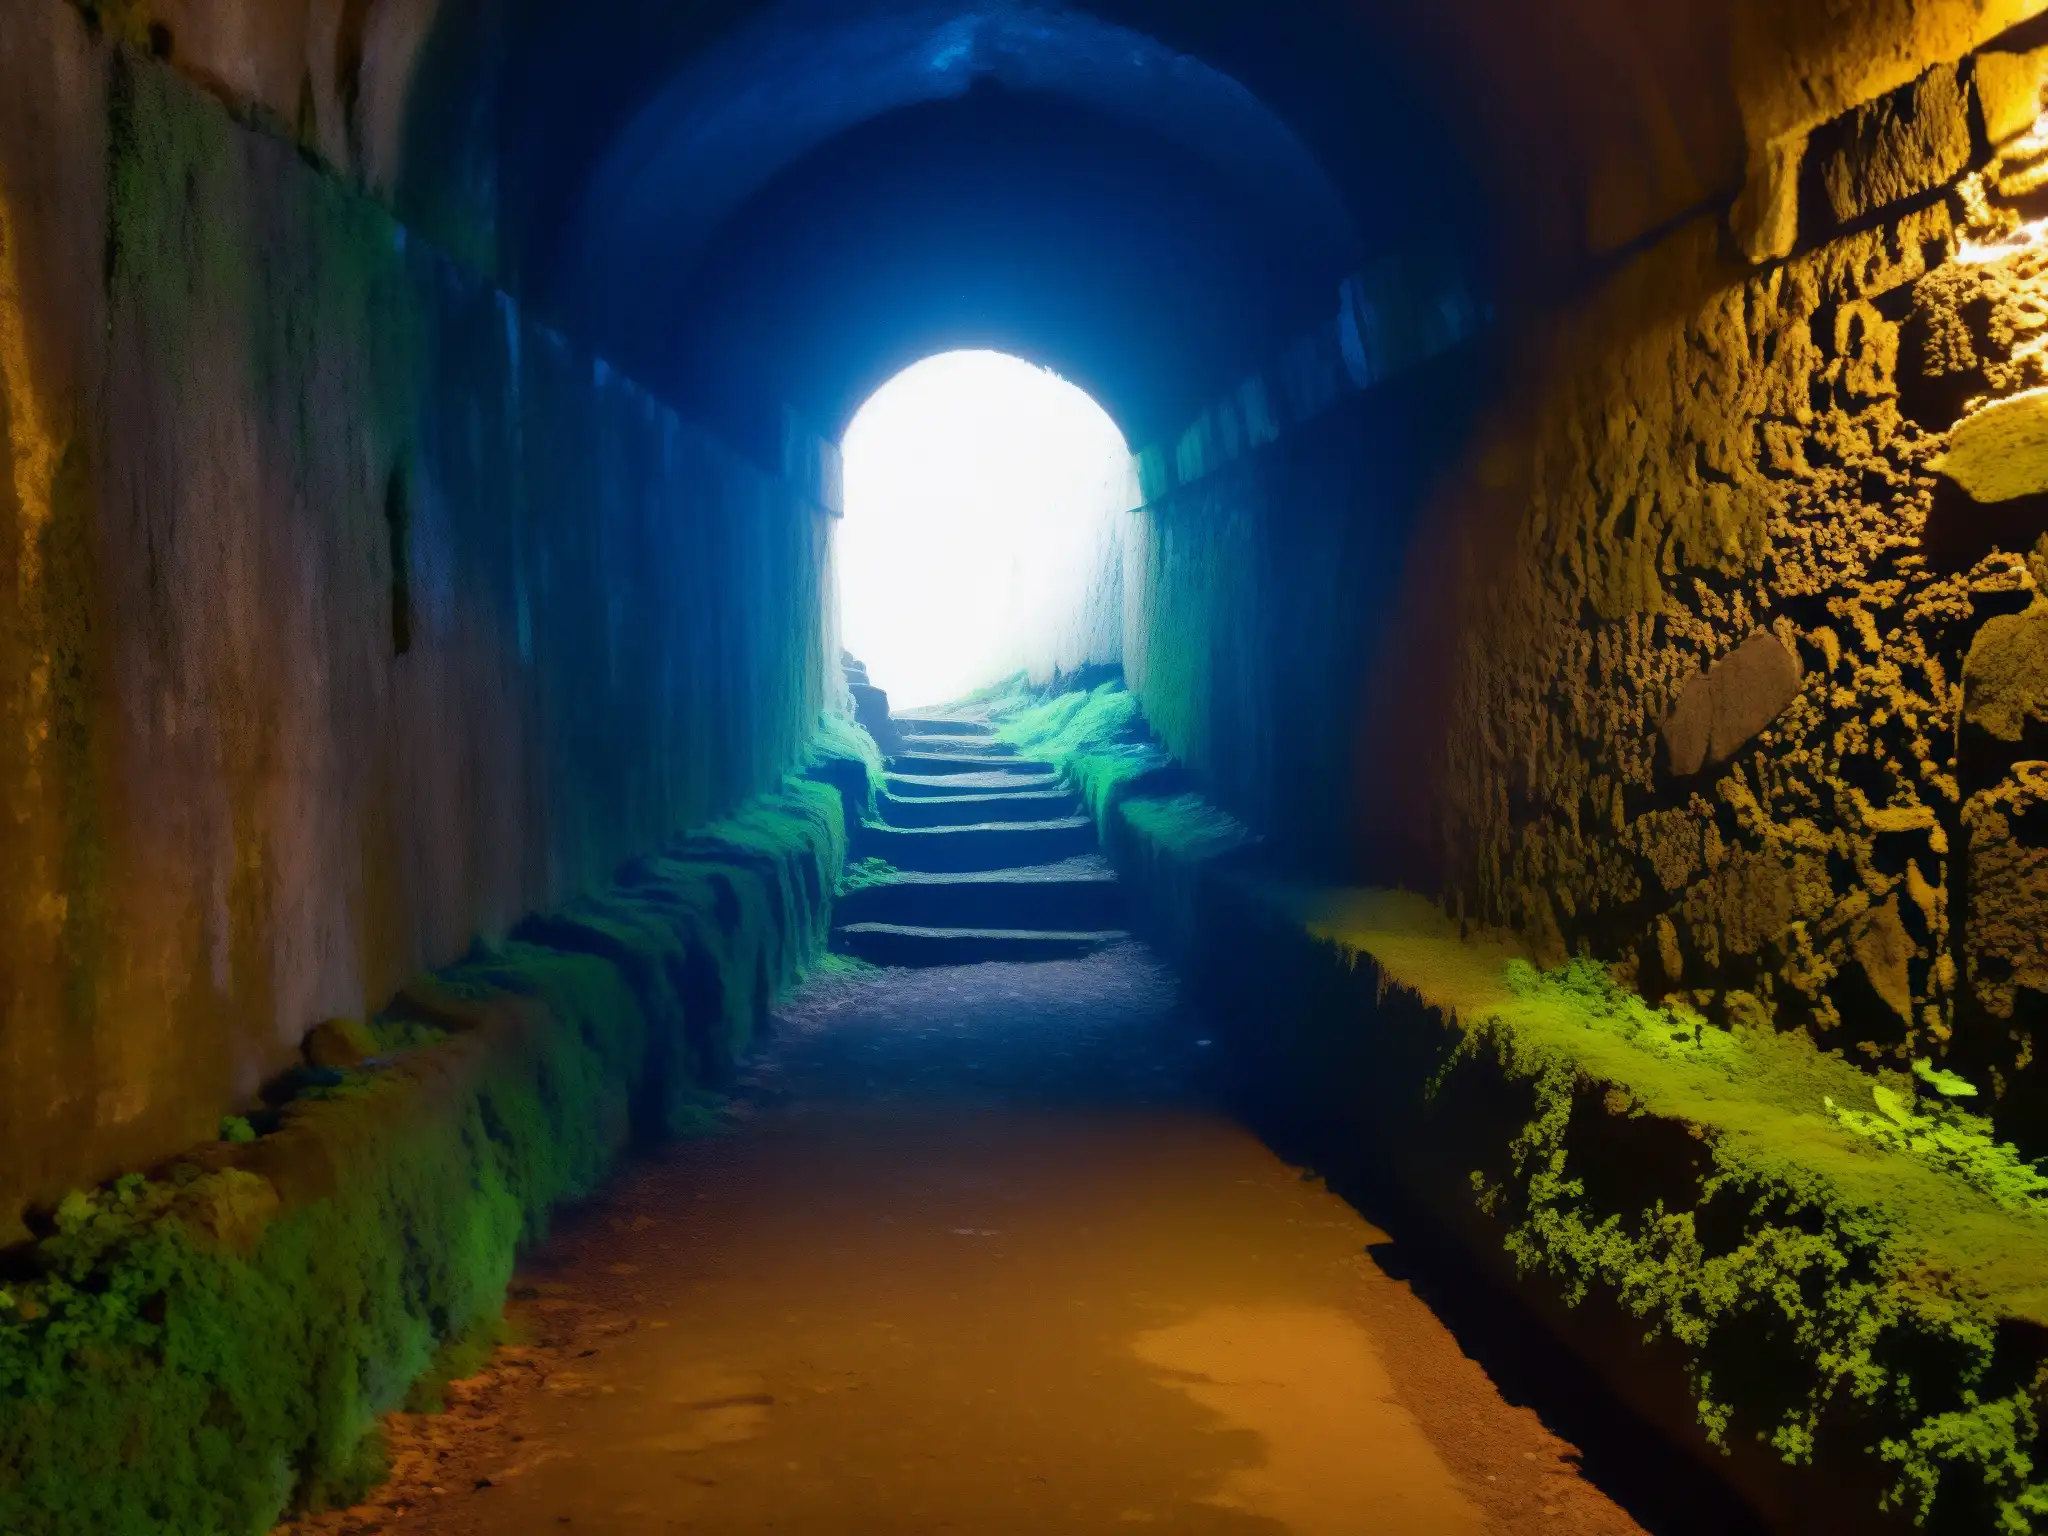 Un túnel angosto y tenue se adentra en la oscuridad, con muros de piedra cubiertos de musgo y un resplandor tenue y espeluznante al final del pasaje